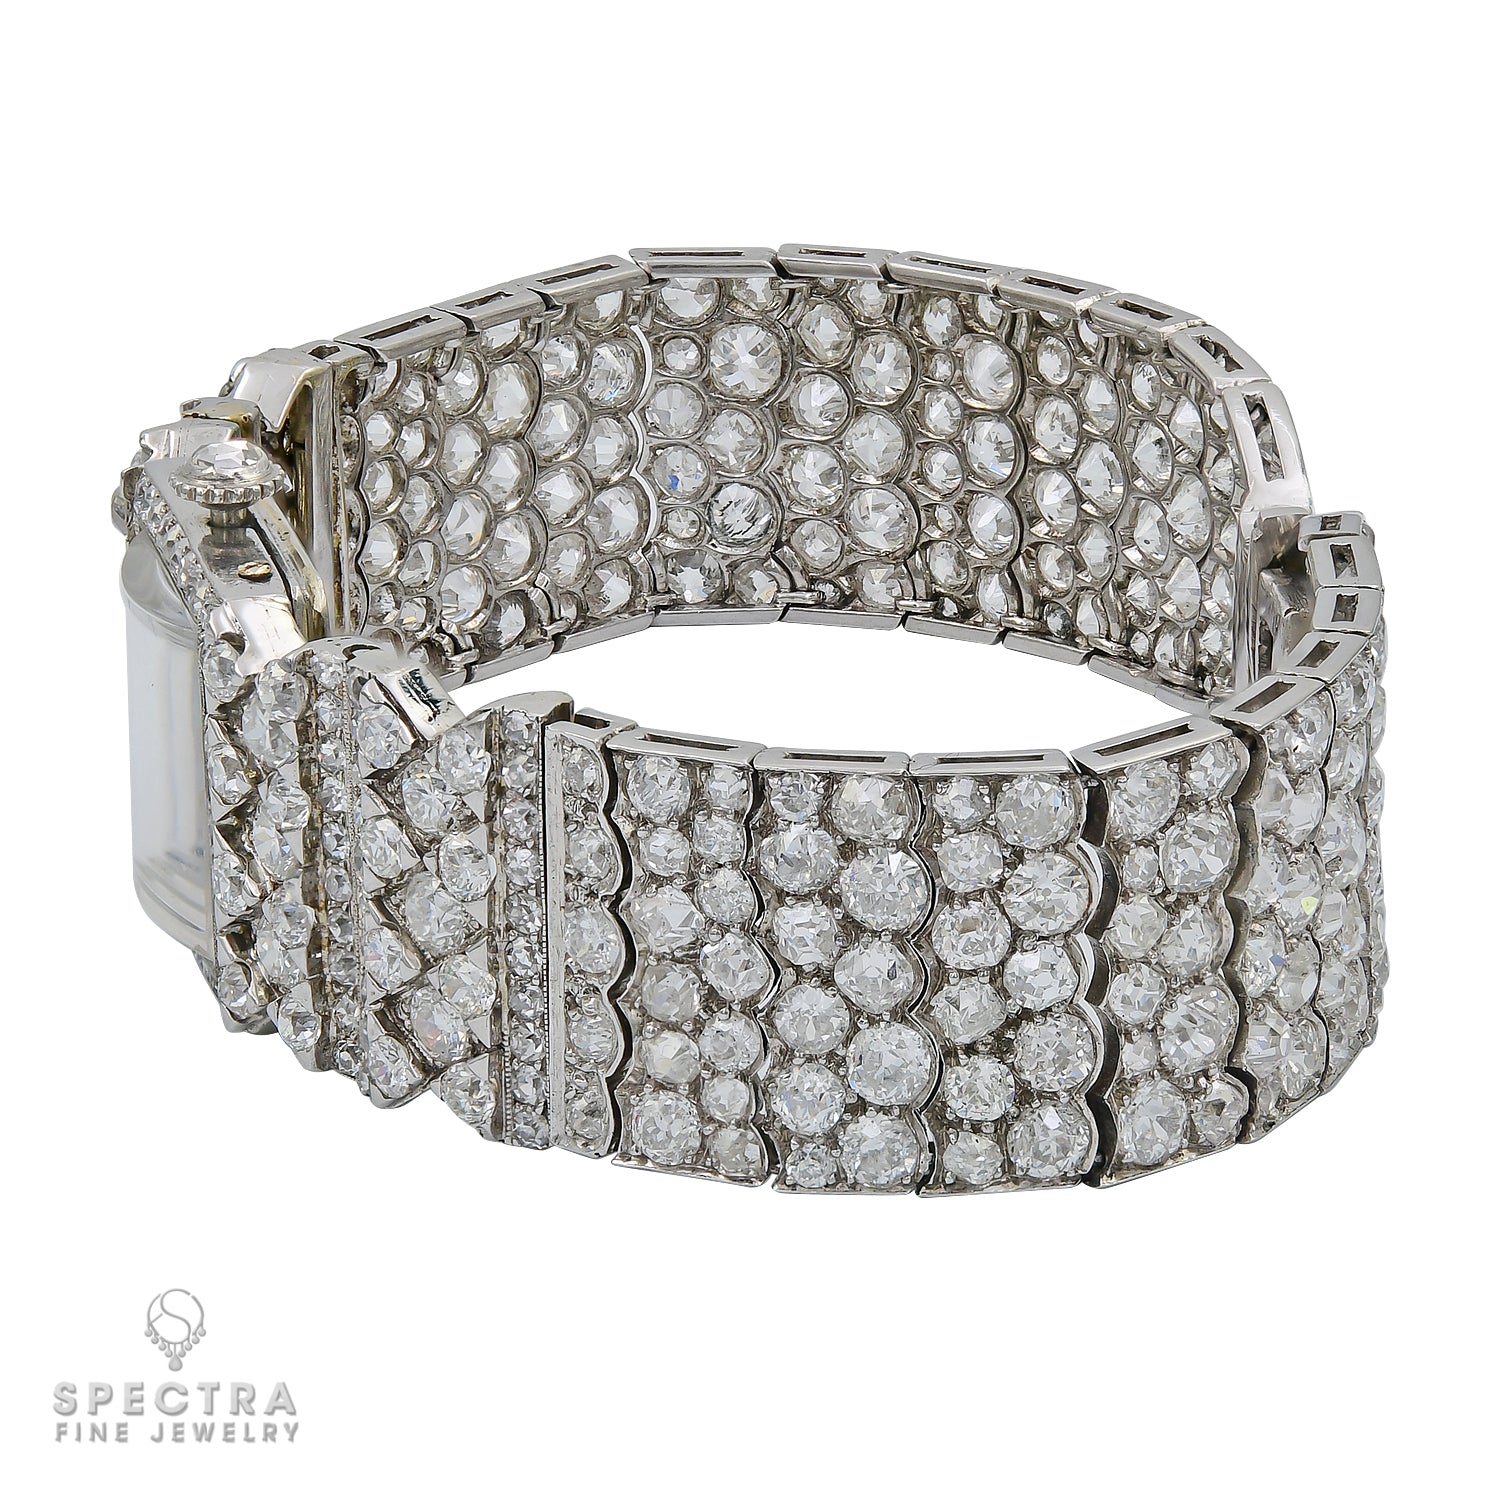 Art Deco Diamond Wristwatch by Cartier 27.0 ct Diamonds